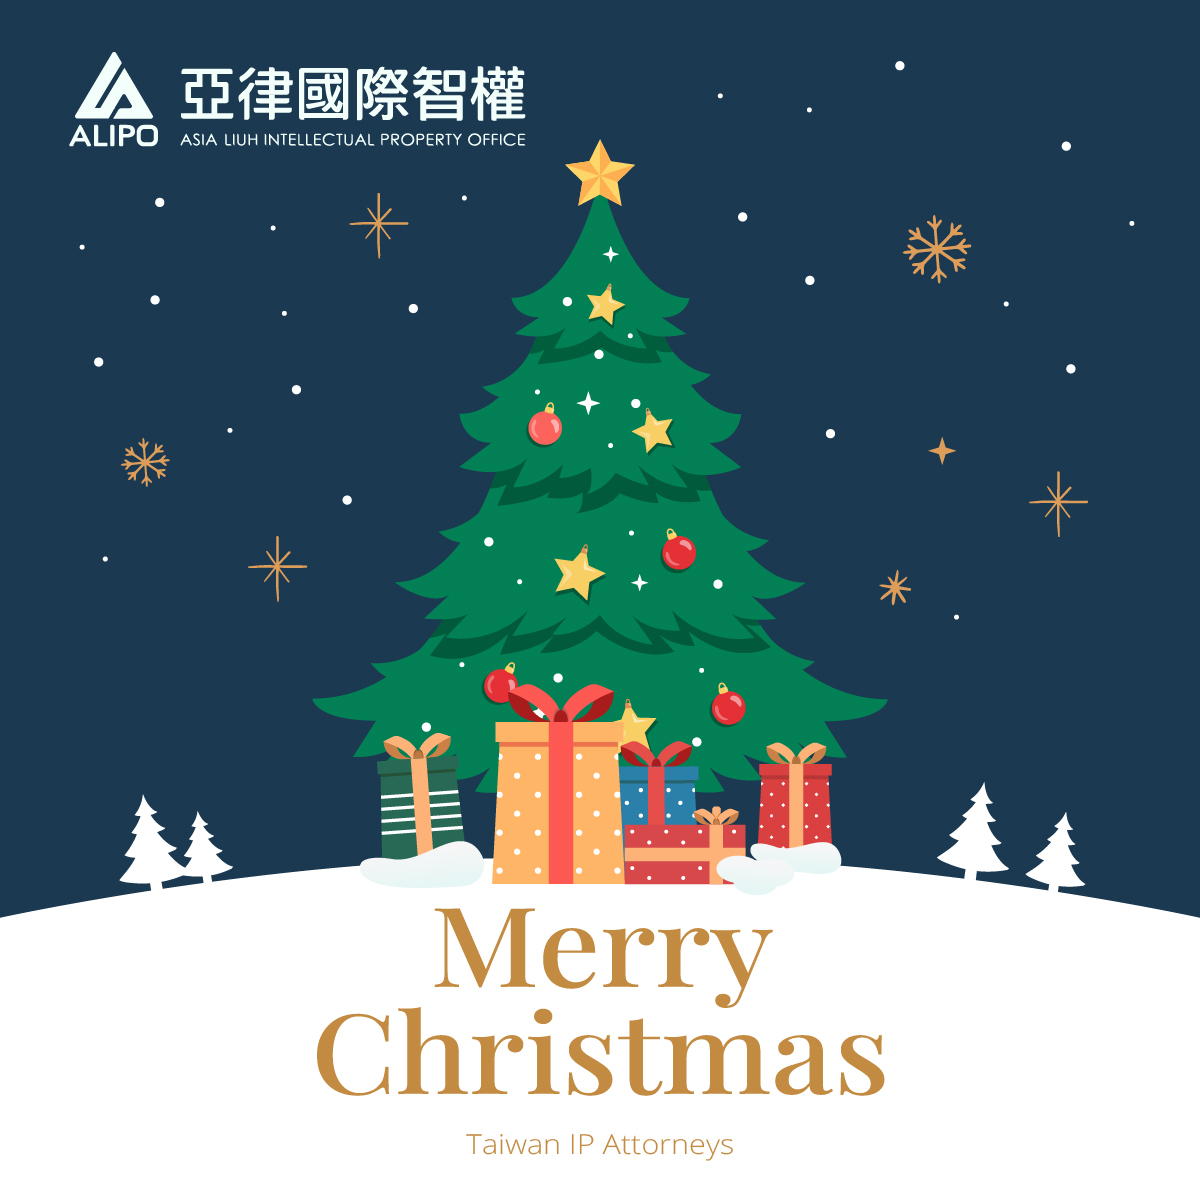 亞律國際專利商標聯合事務所祝您聖誕佳節與新年愉快！